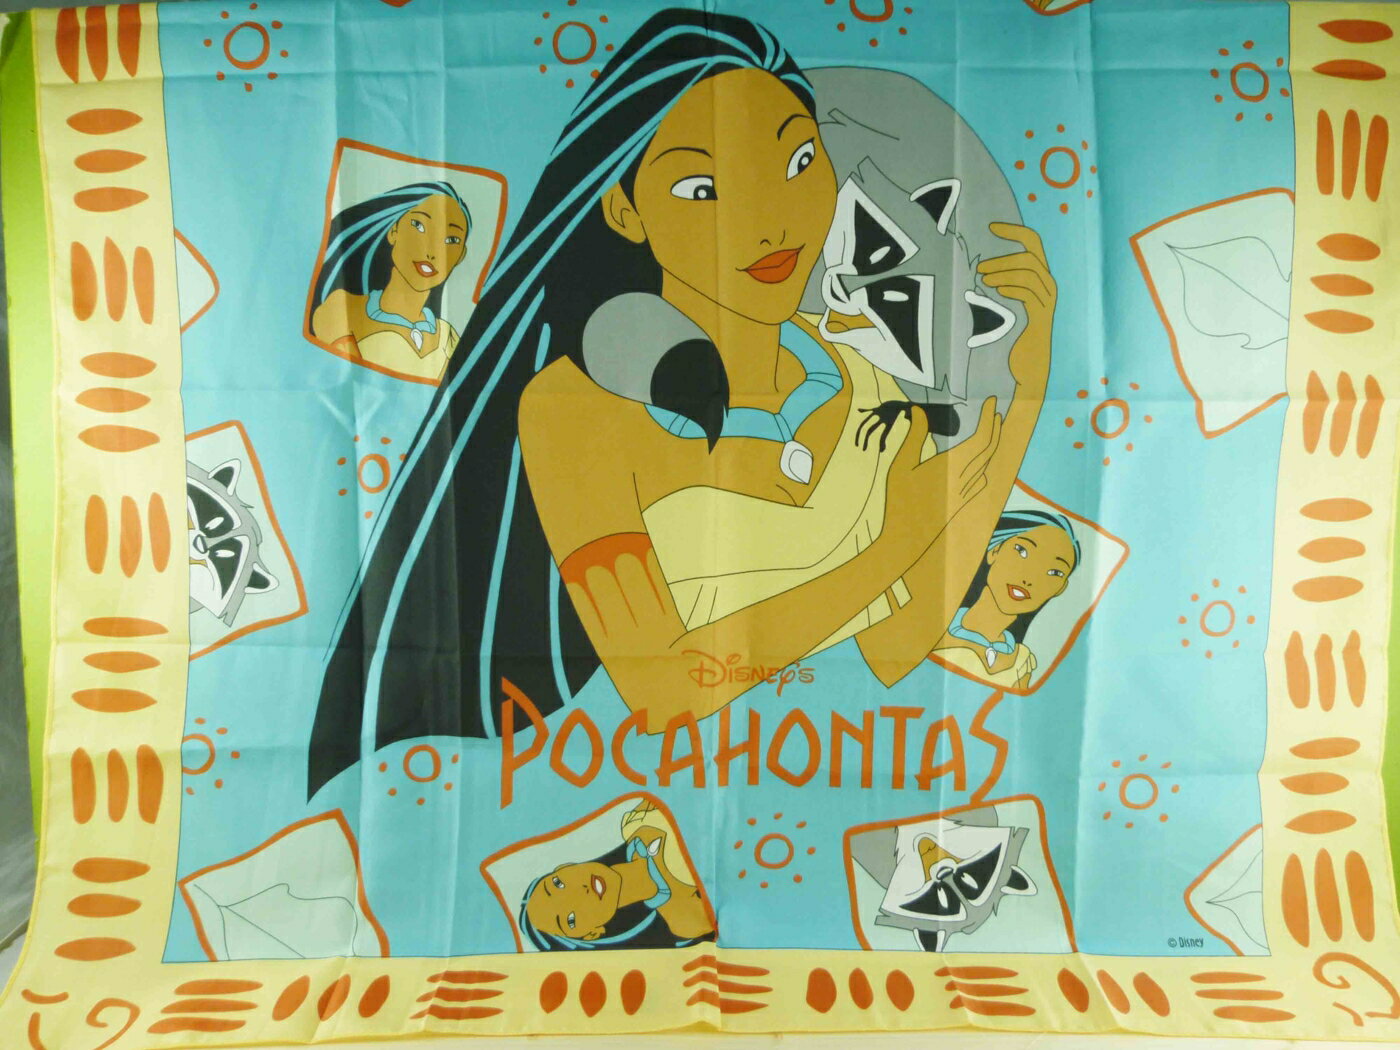 【震撼精品百貨】Disney 迪士尼 Pocahontas 風中奇緣 絲巾-鳳中奇緣公主+寵物 震撼日式精品百貨